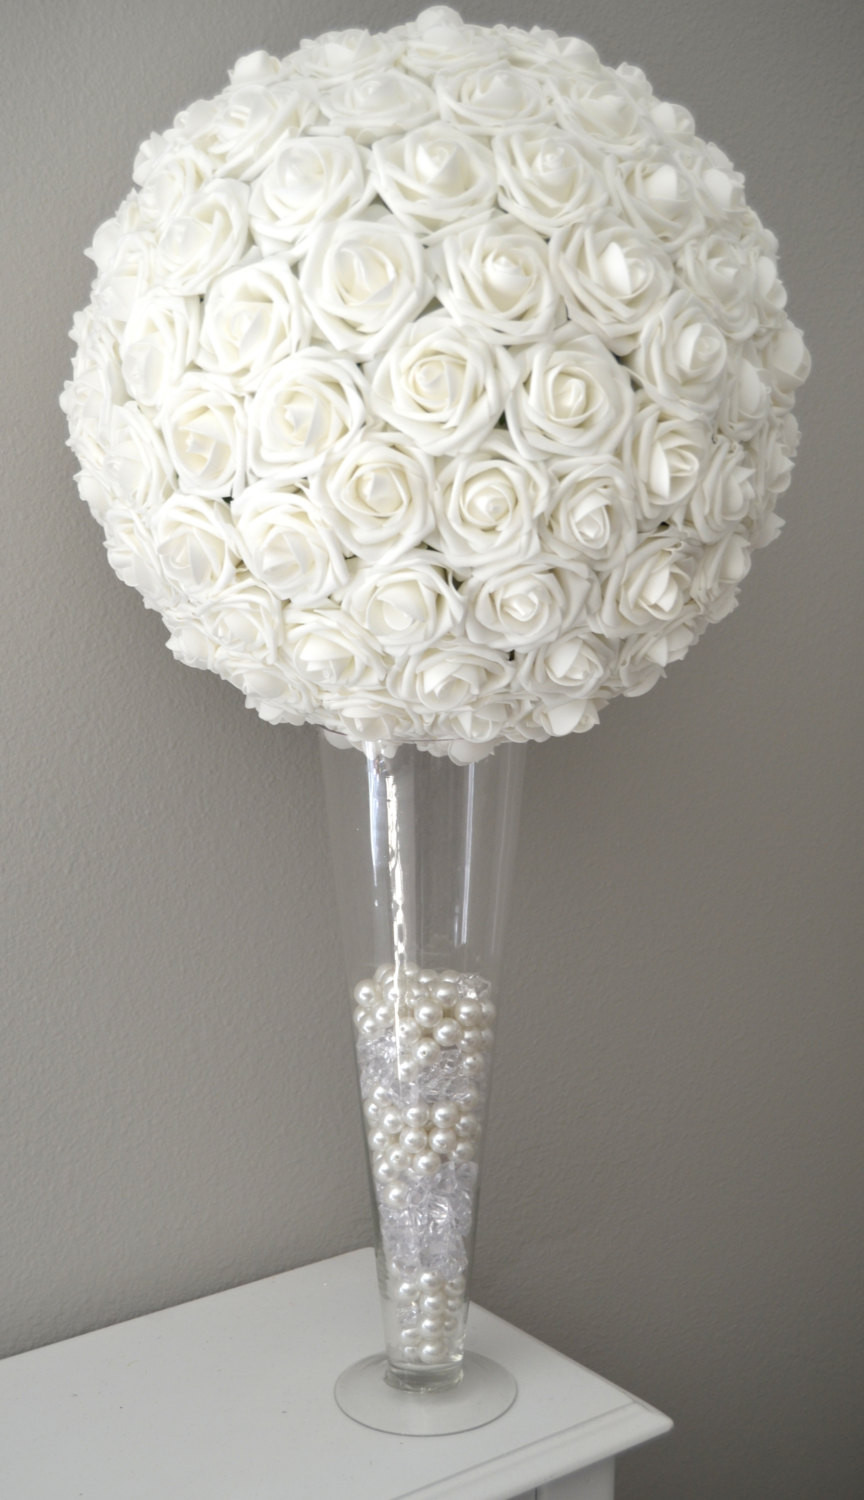 Flower Balls For Wedding
 WHITE FLOWER BALL Kissing Ball Wedding Centerpiece Flower